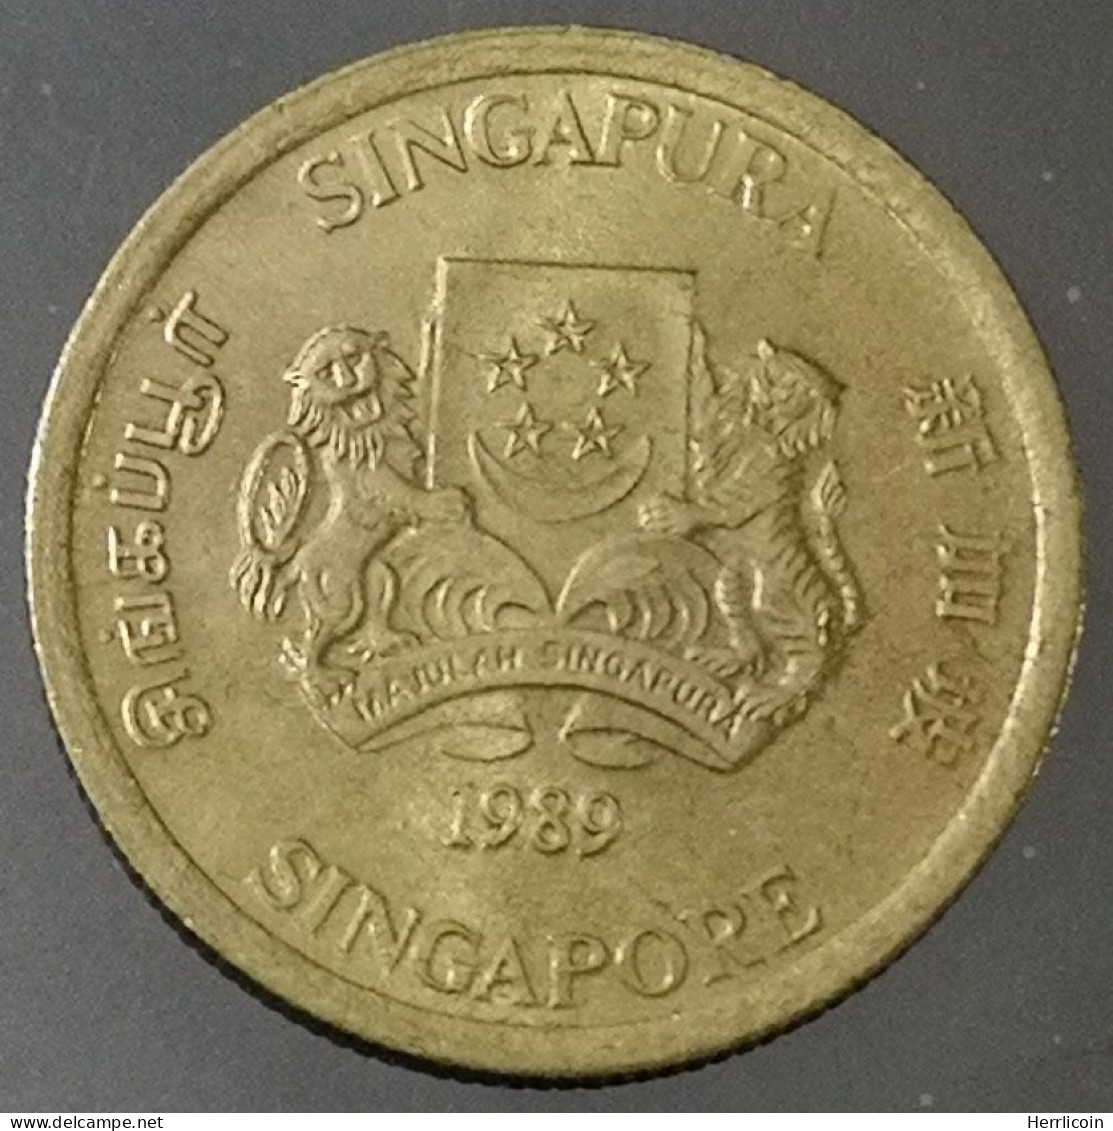 Monnaie Singapour - 1989 - 5 Cents Blason Haut - Singapur